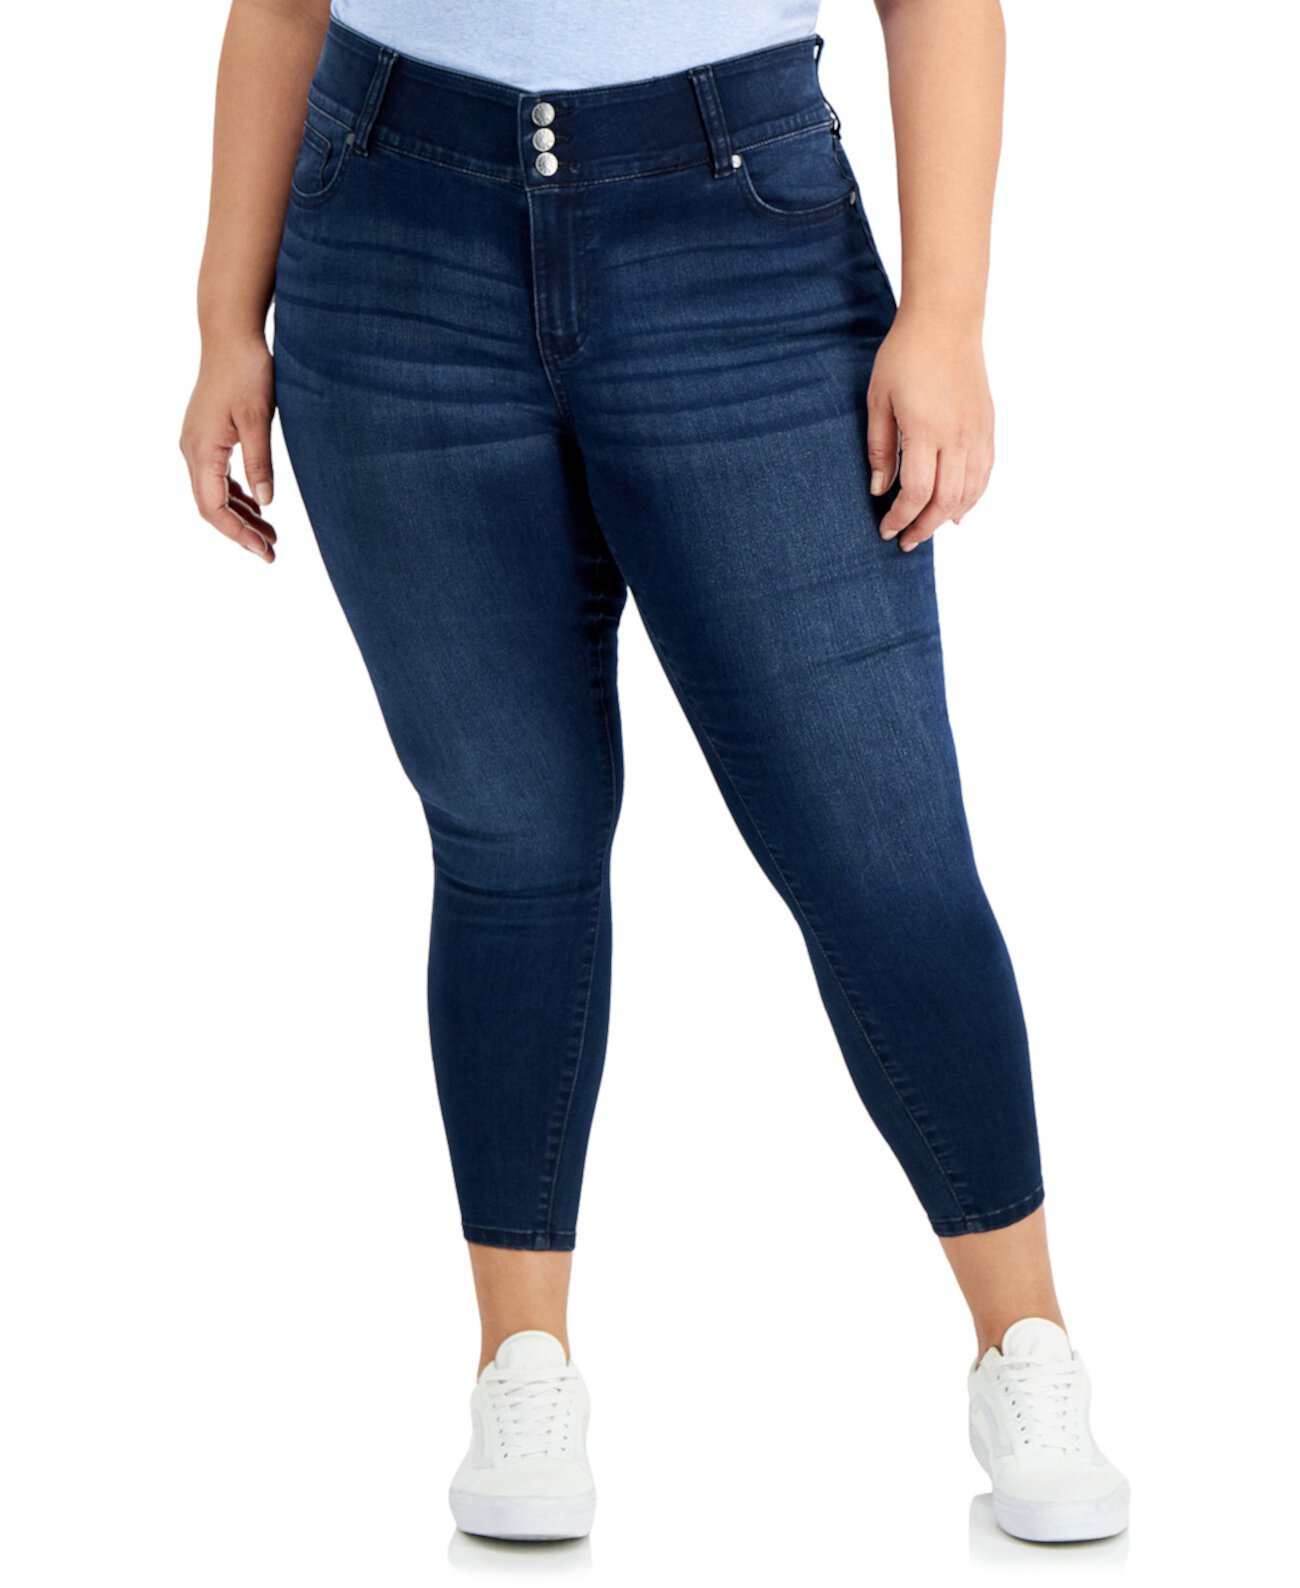 Модные джинсы скинни до щиколотки с тремя пуговицами больших размеров Celebrity Pink